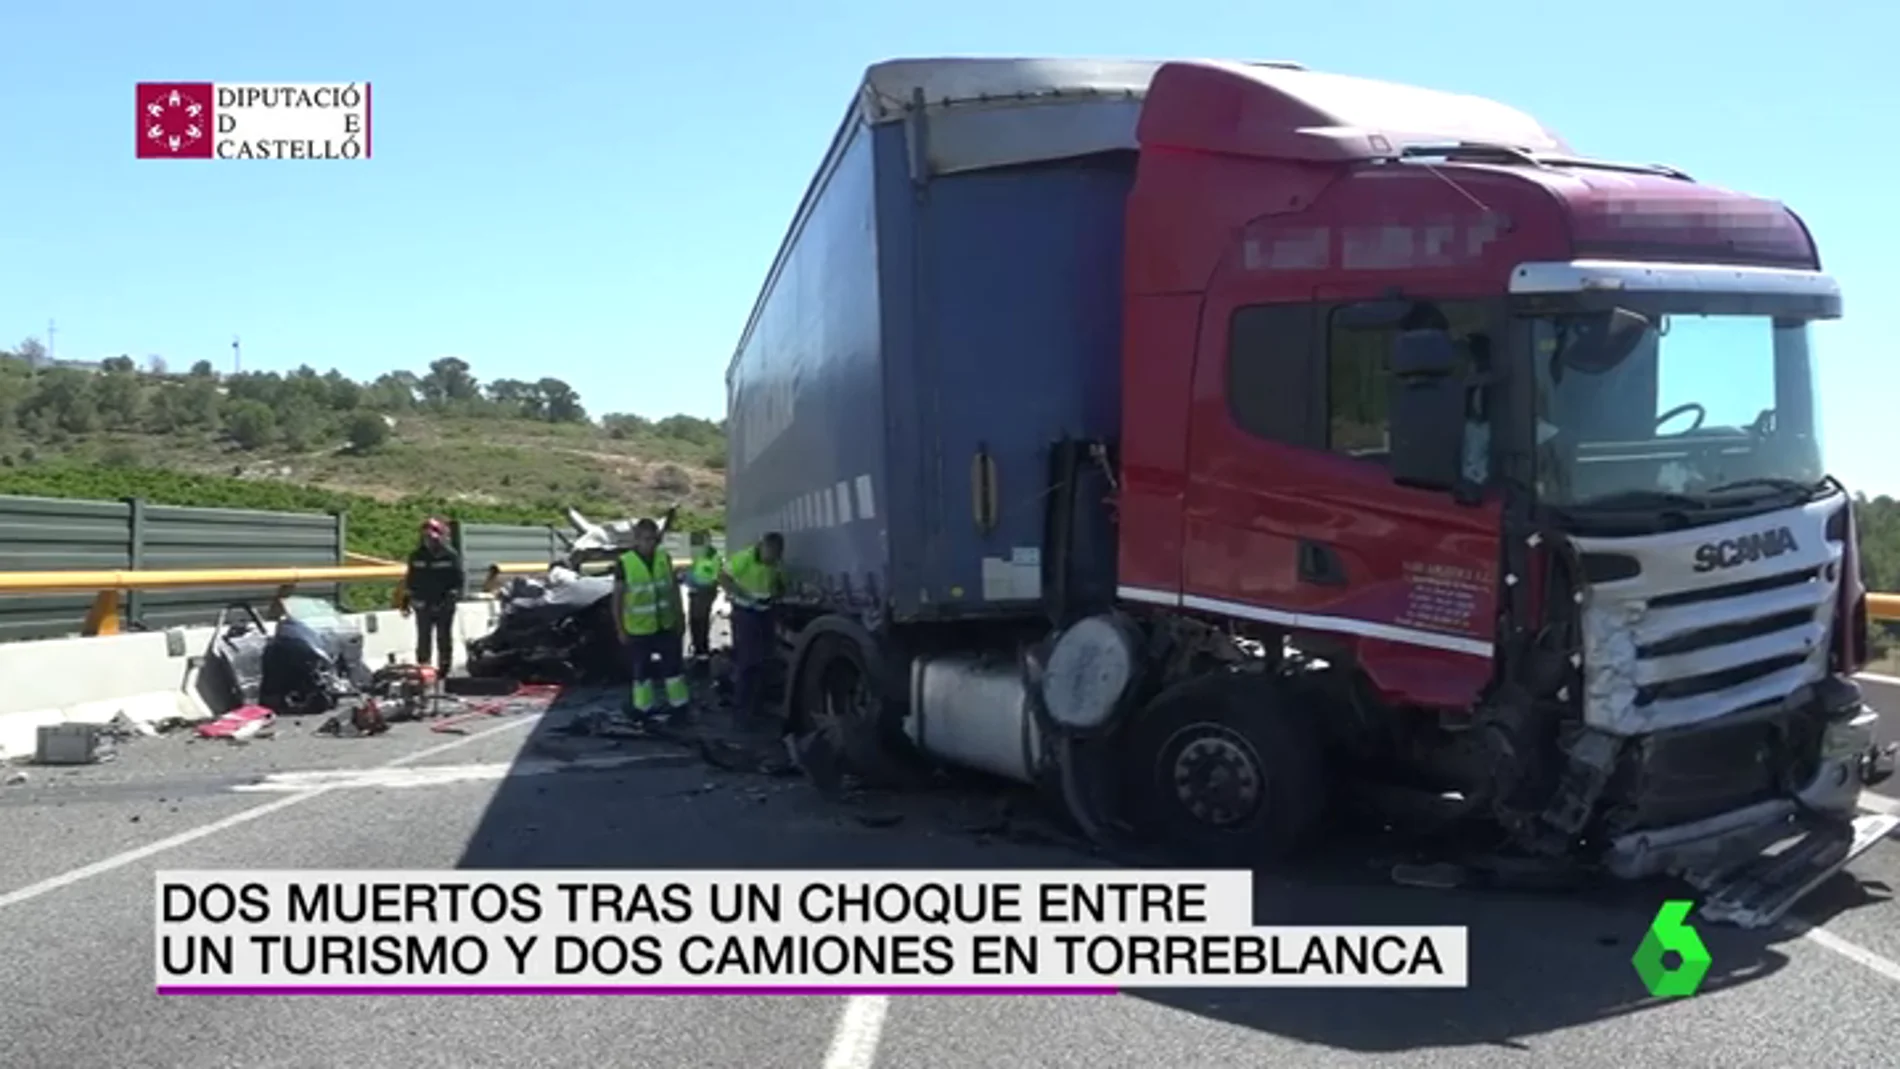 Frame 13.347886 de: Dos personas han muerto tras el choque de un turismo y dos camiones en Torreblanca